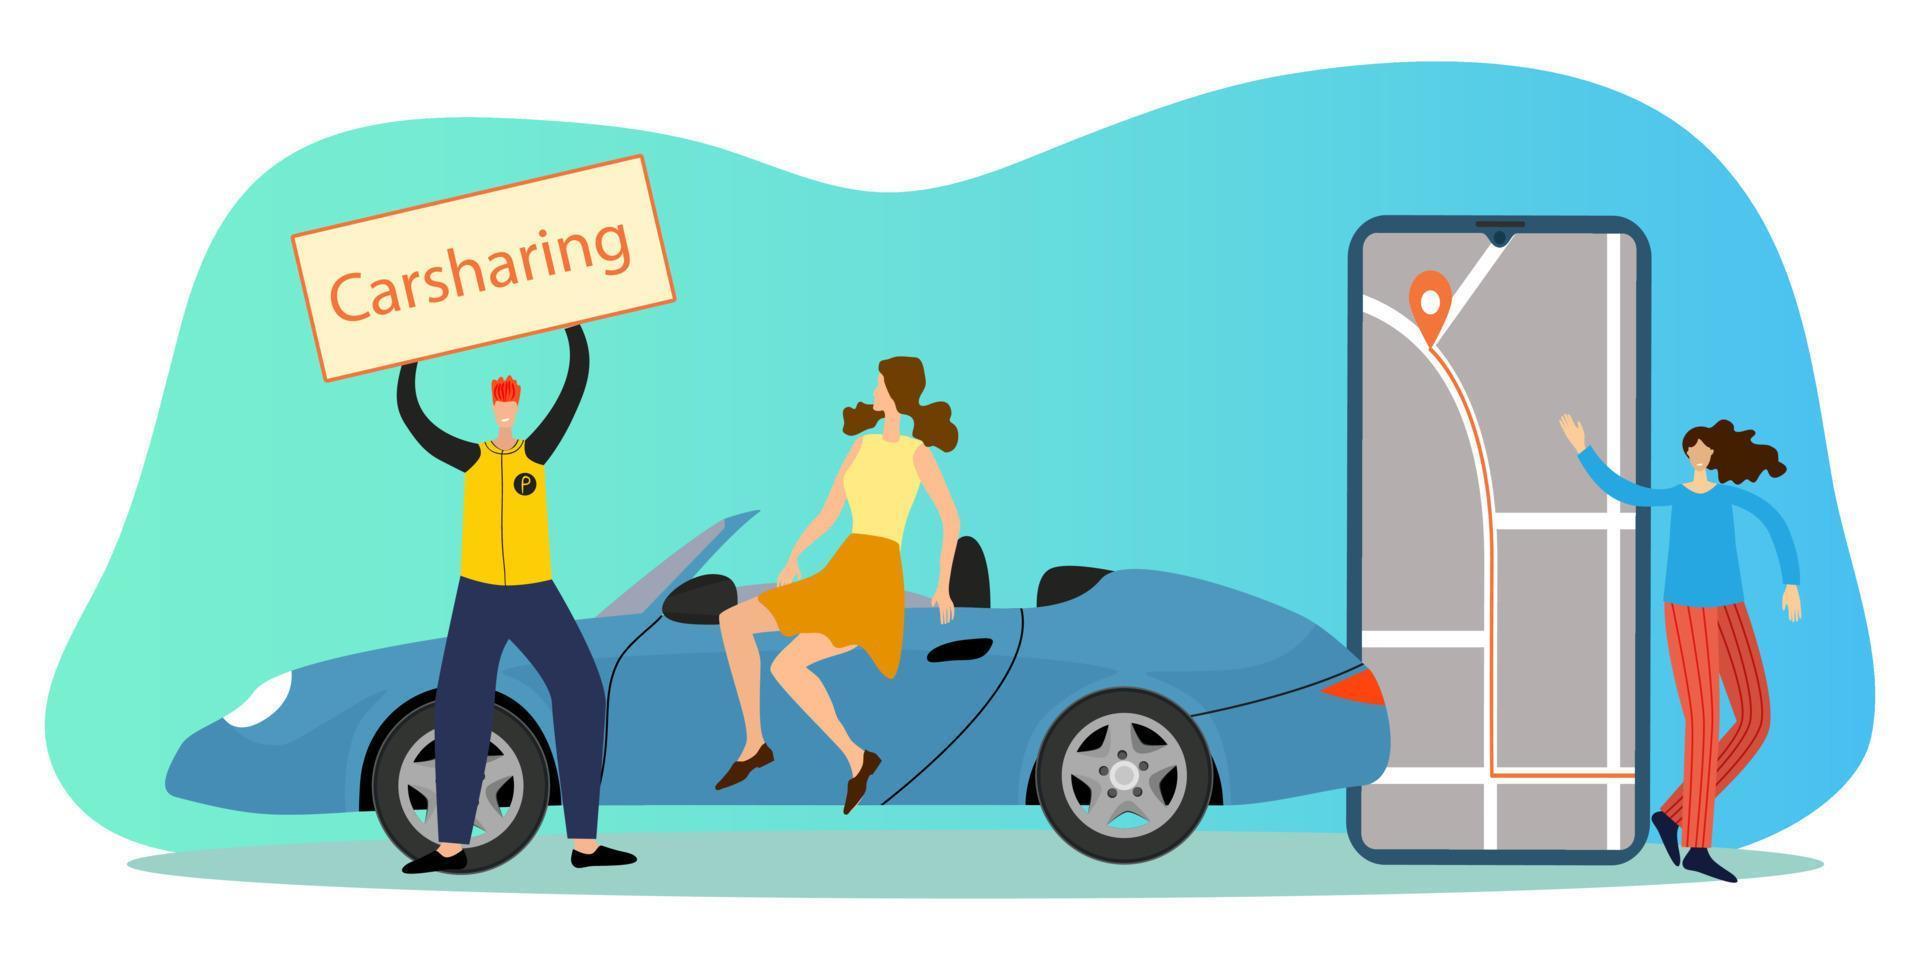 vlak vector illustratie.mensen adverteren de auto delen dienst.de concept van online auto verhuur kan worden gebruikt voor affiches, banners en web plaatsen.